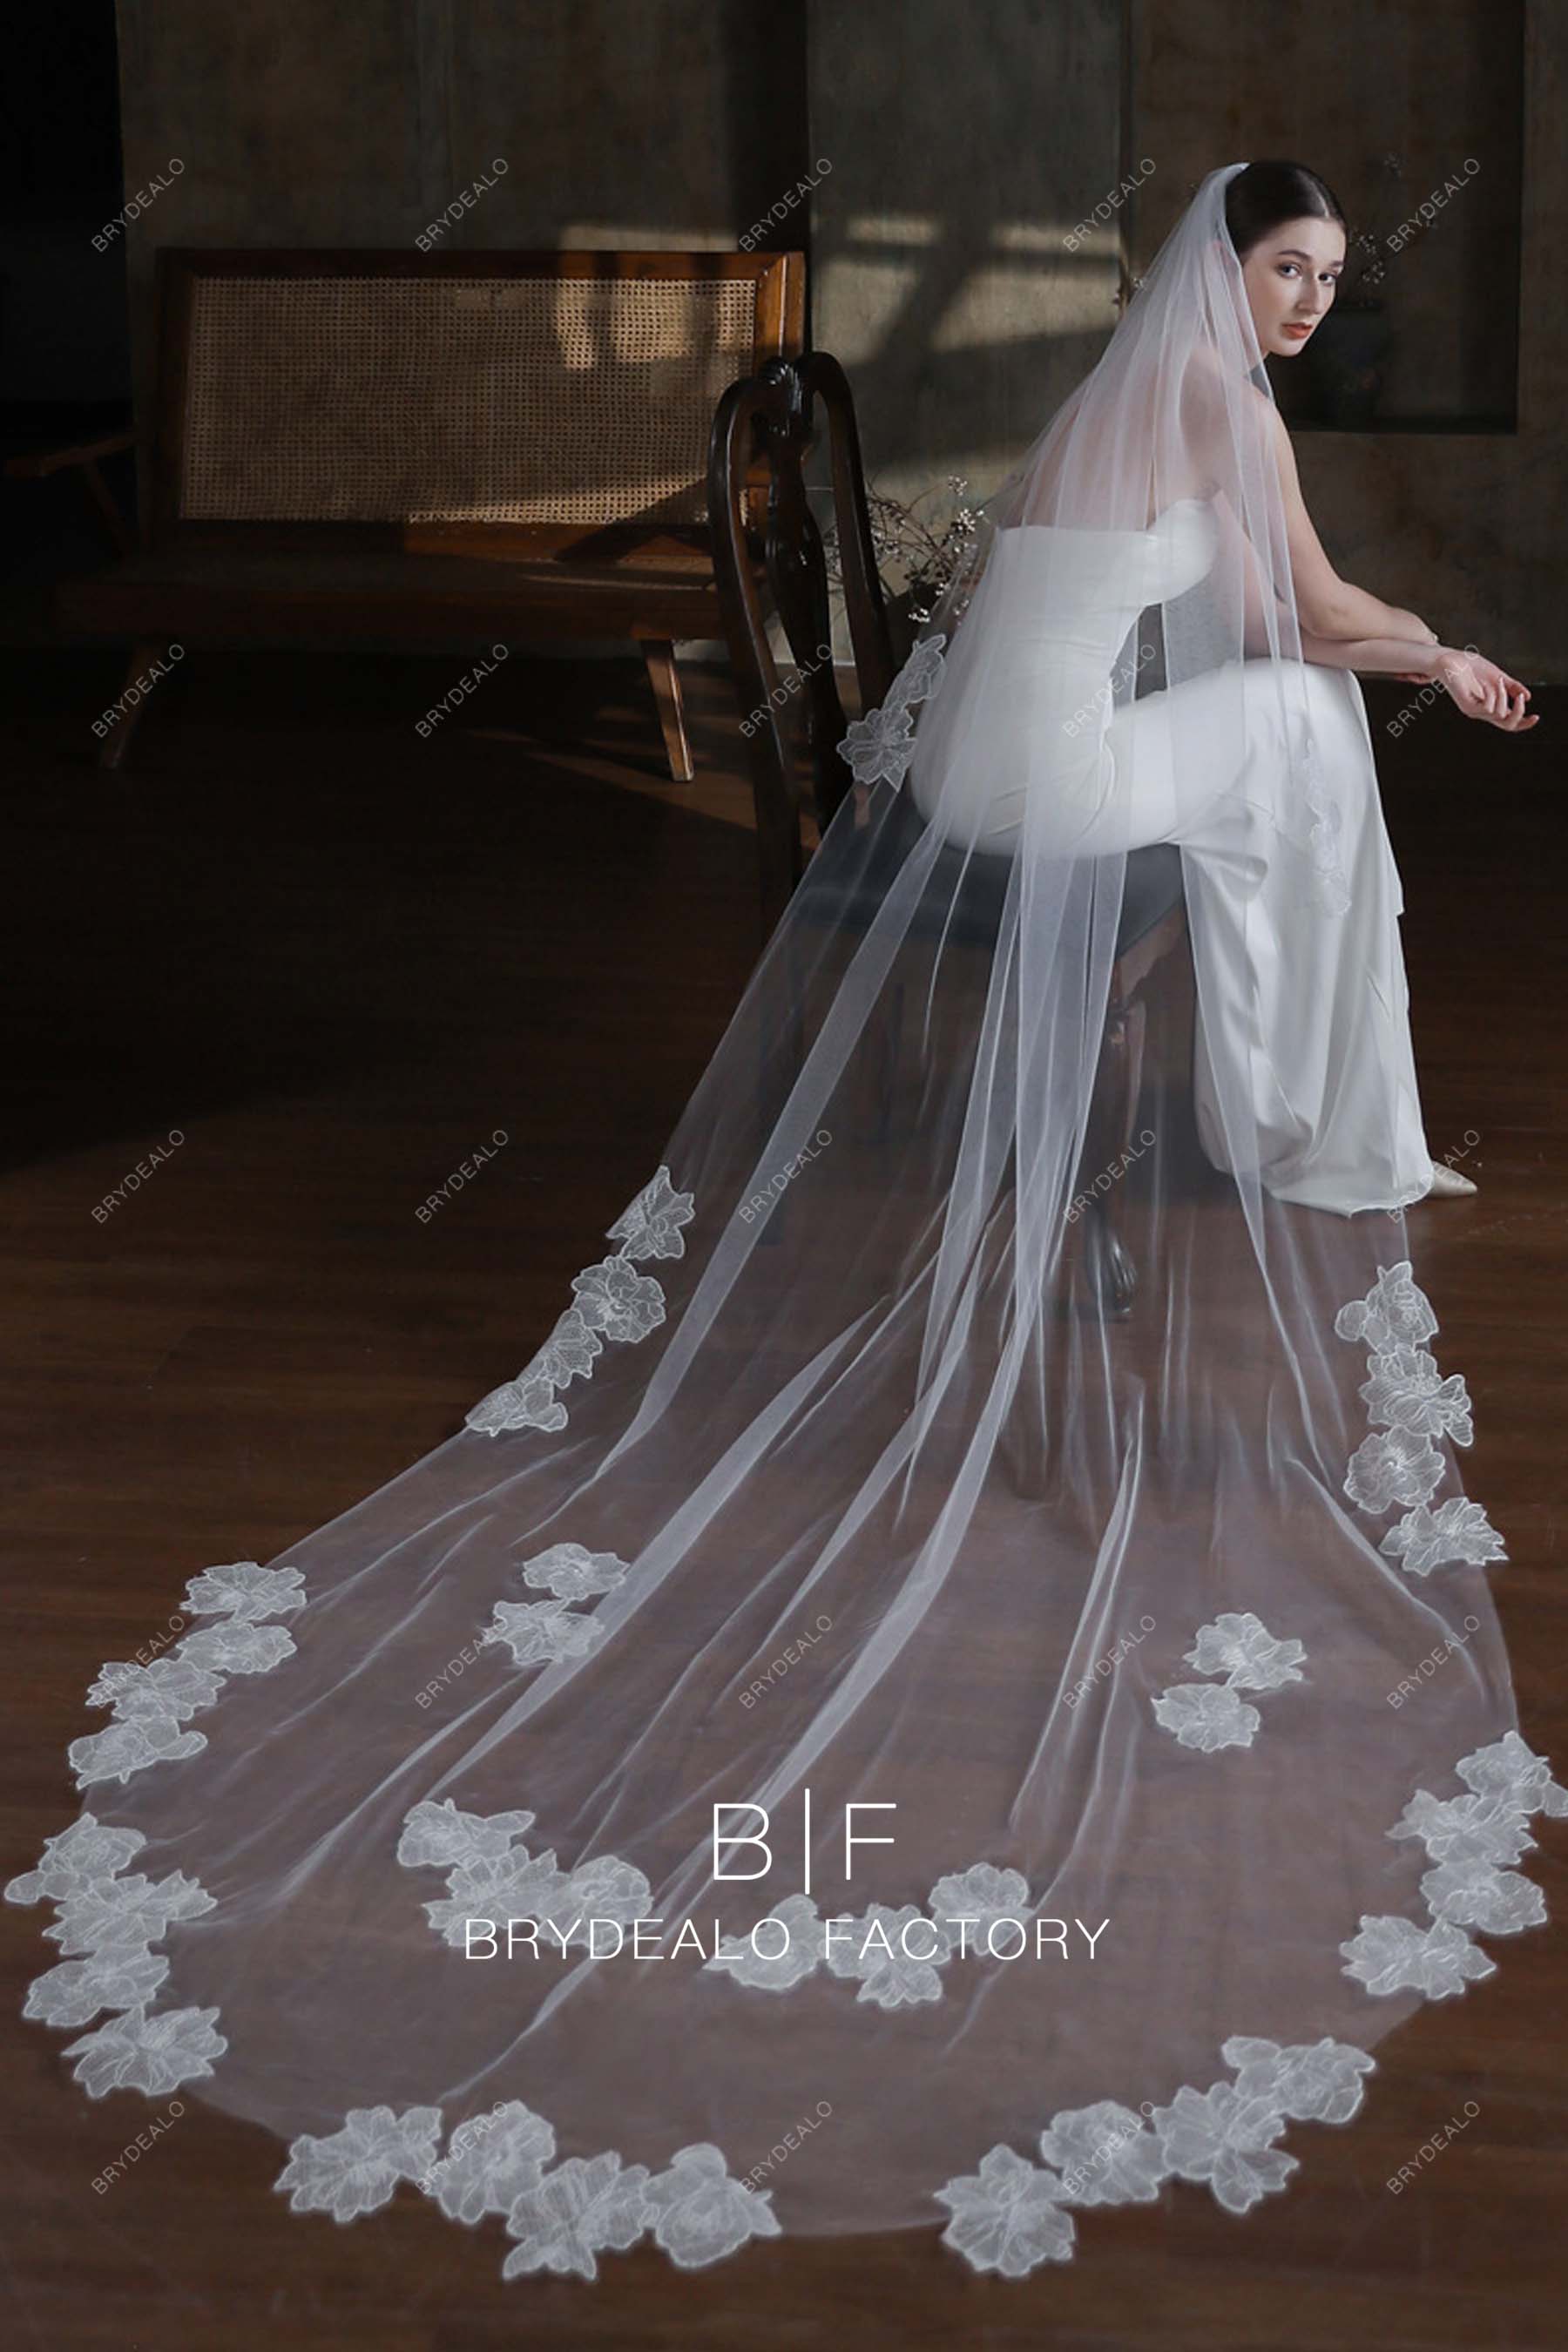 Brydealo Factory Romantic Flowers Lace Wholesale Chapel Length Wedding Veil